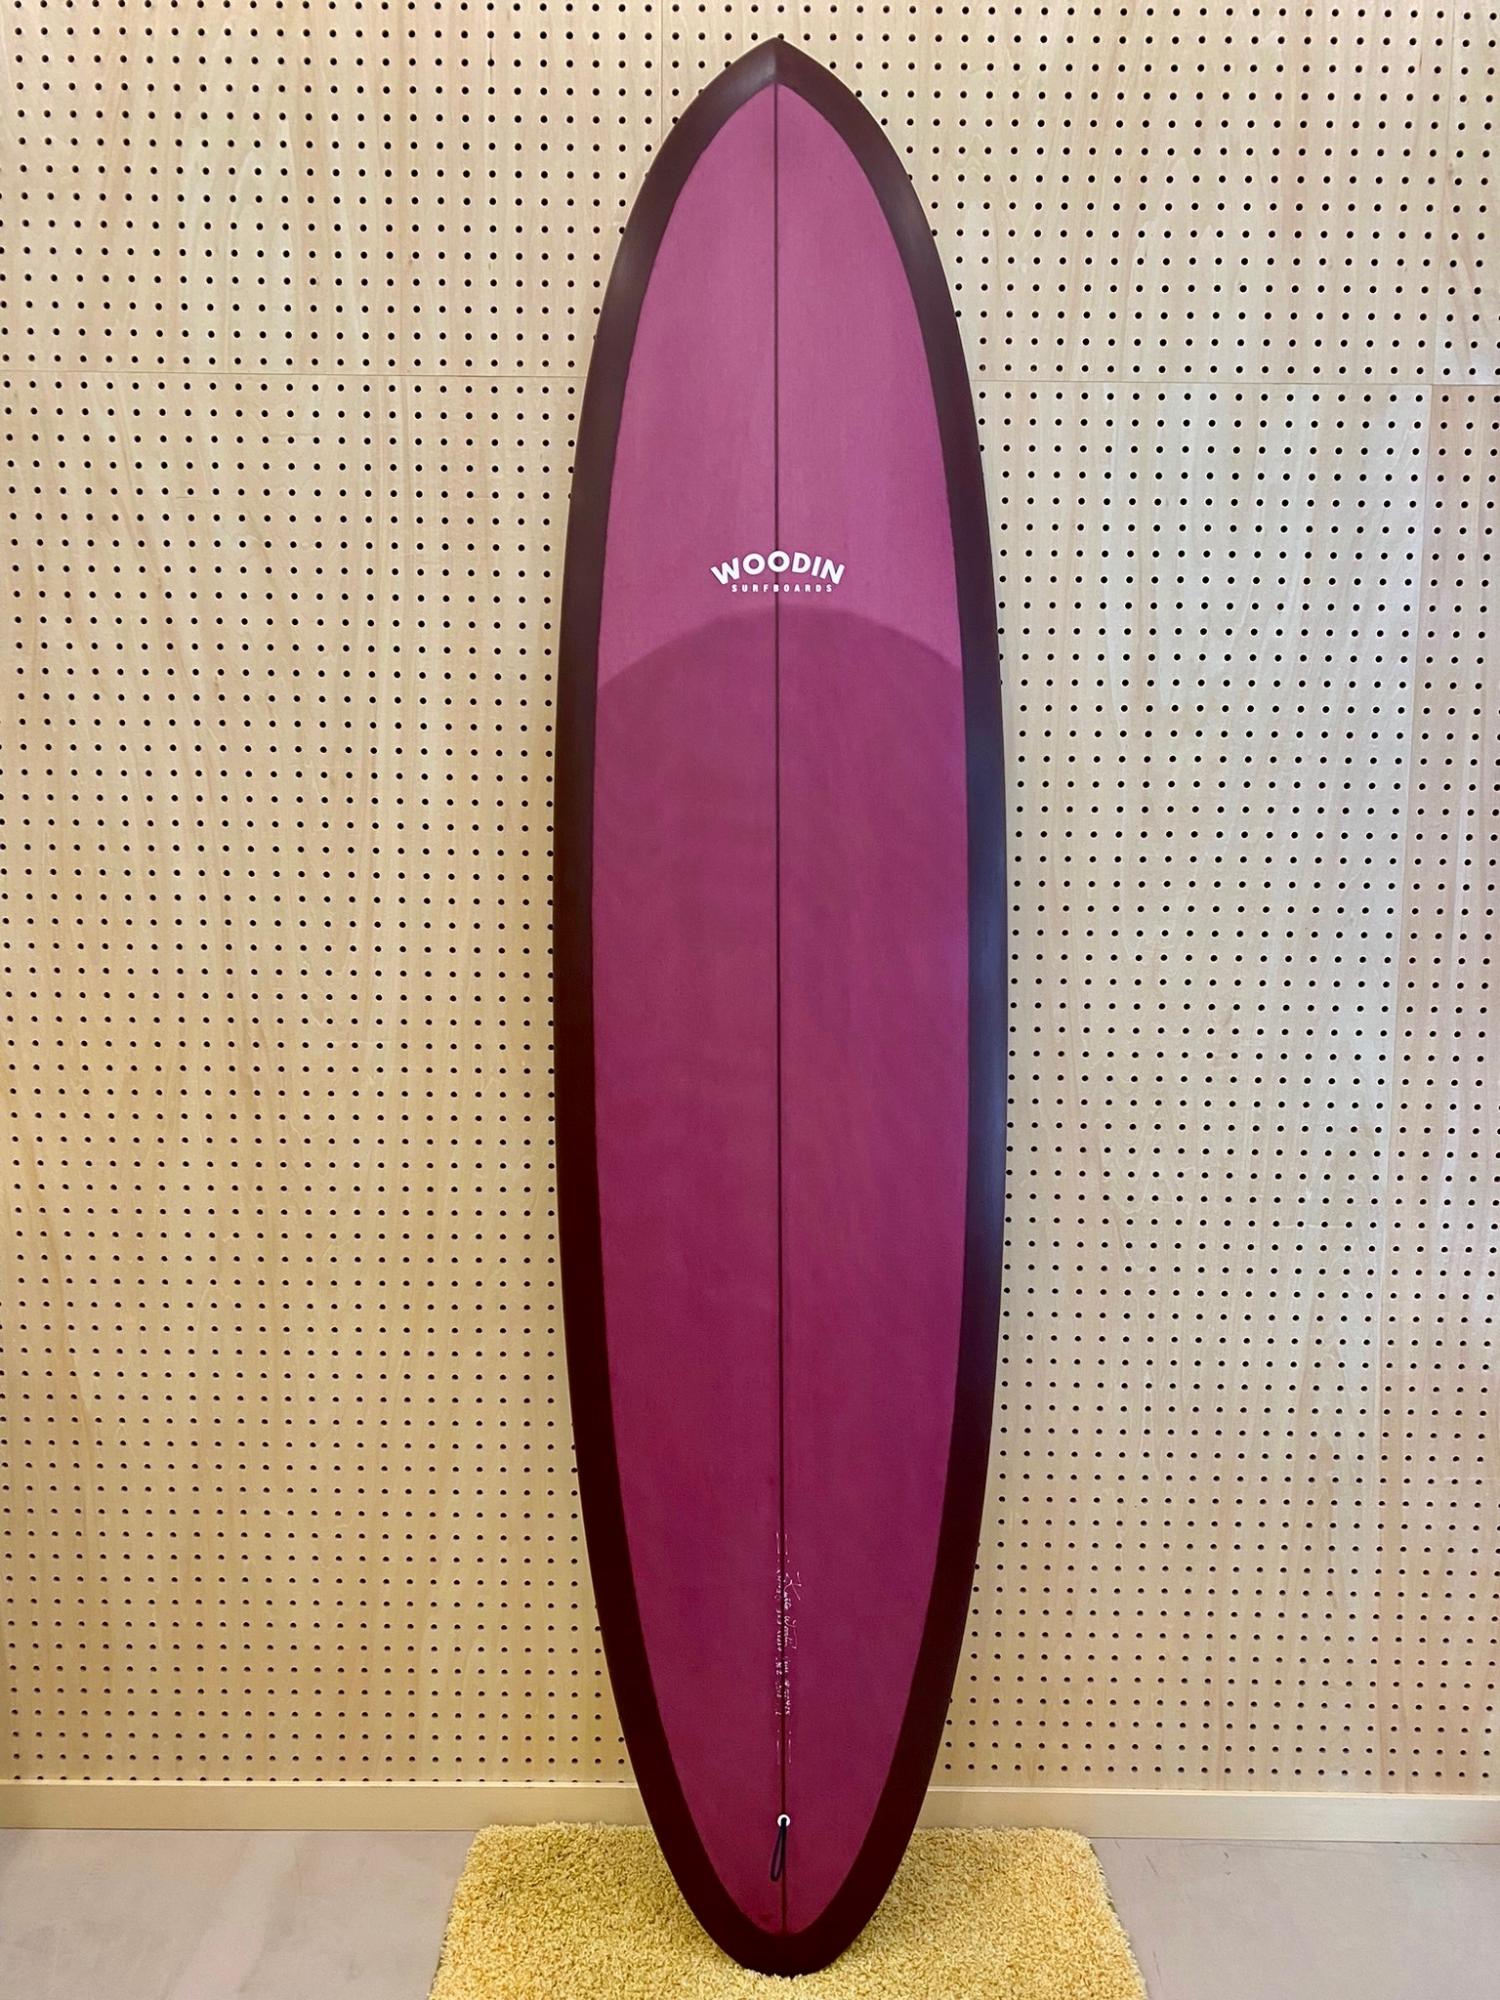 Gypsy Eye model 7.0 WOODIN SURFBOARDS